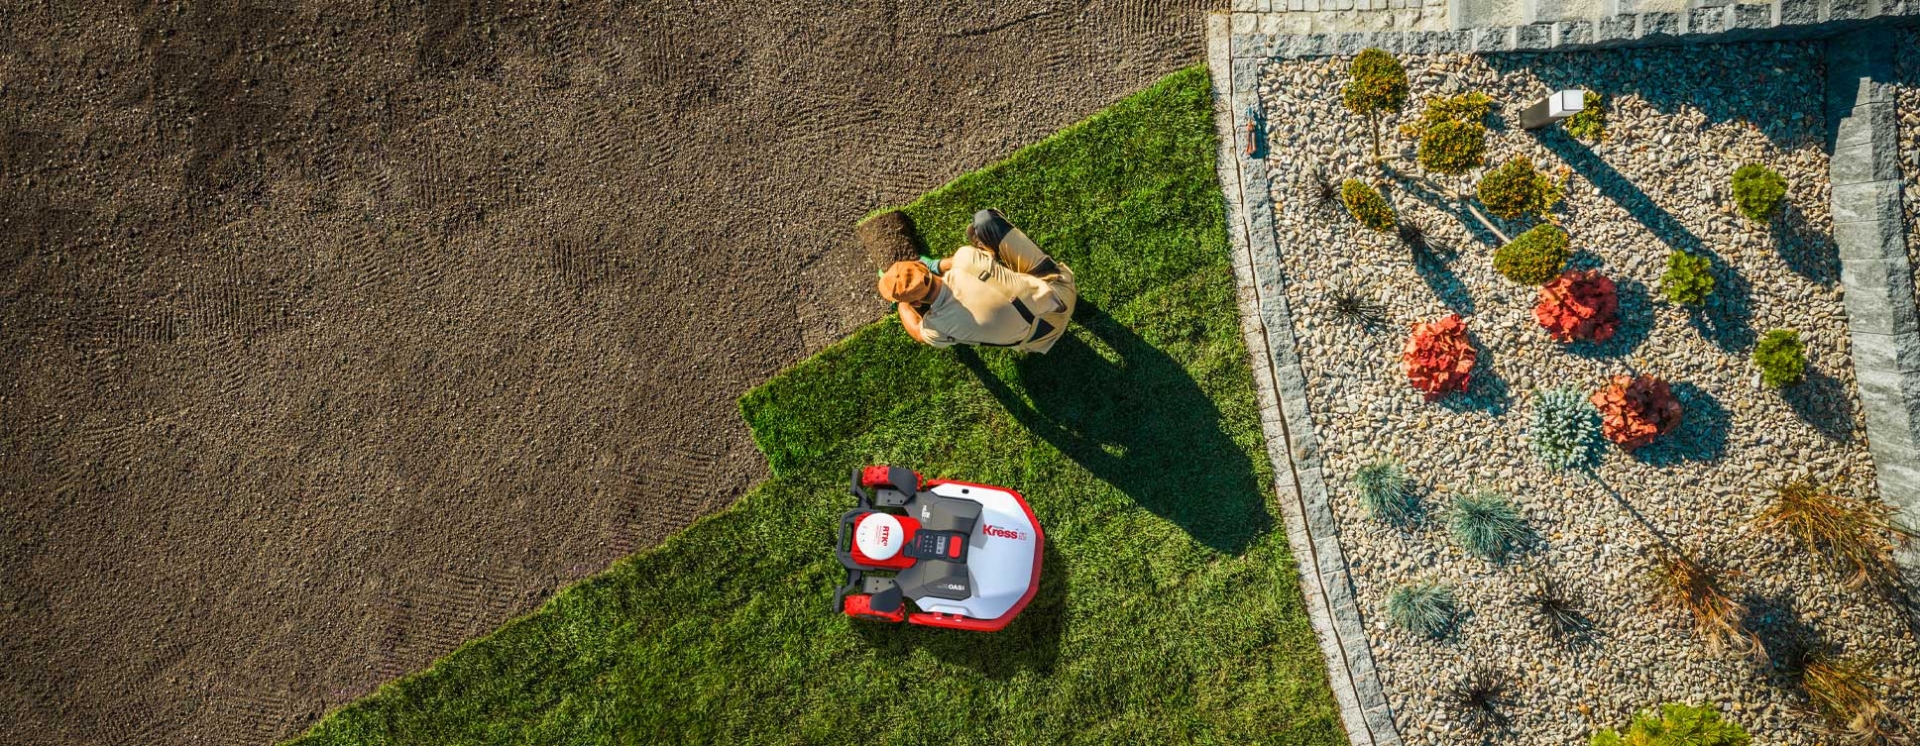 Imagen desde el cielo del jardinero colocando piezas de césped y el robot al lado